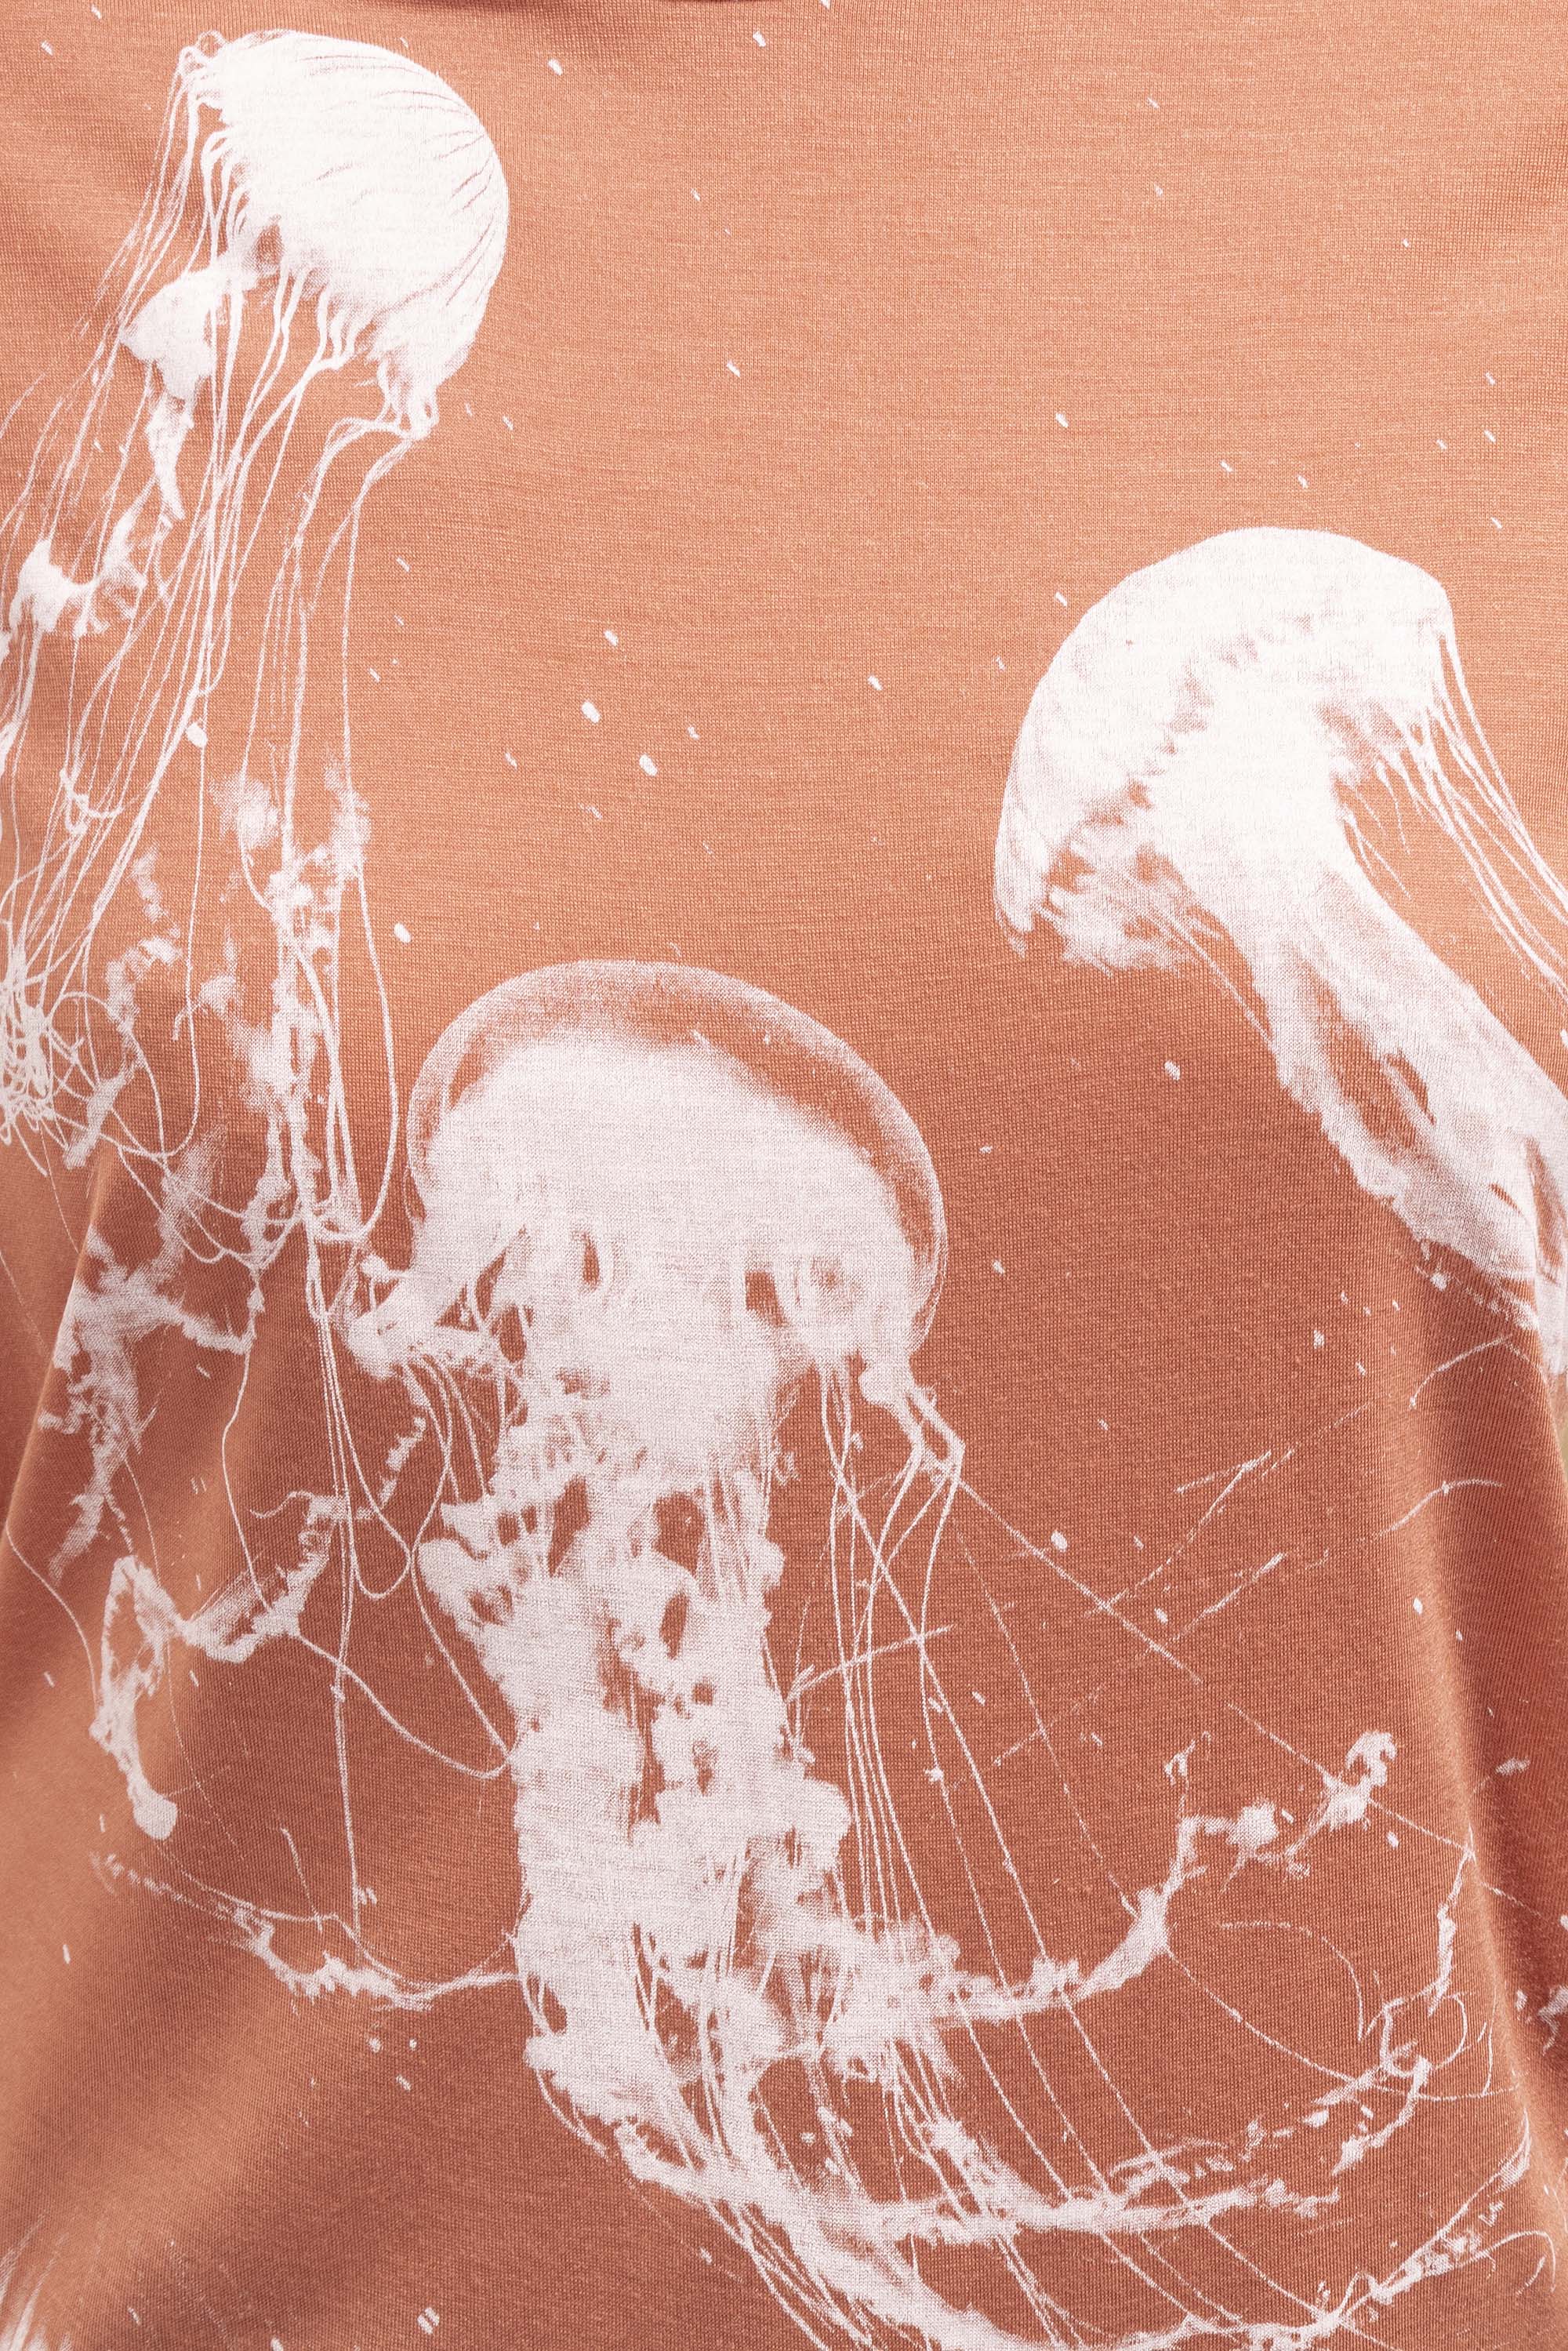 T-Shirt Medallon Medusas Saumon mode graphique, ligne féminine et légèrement rétro, motifs arty